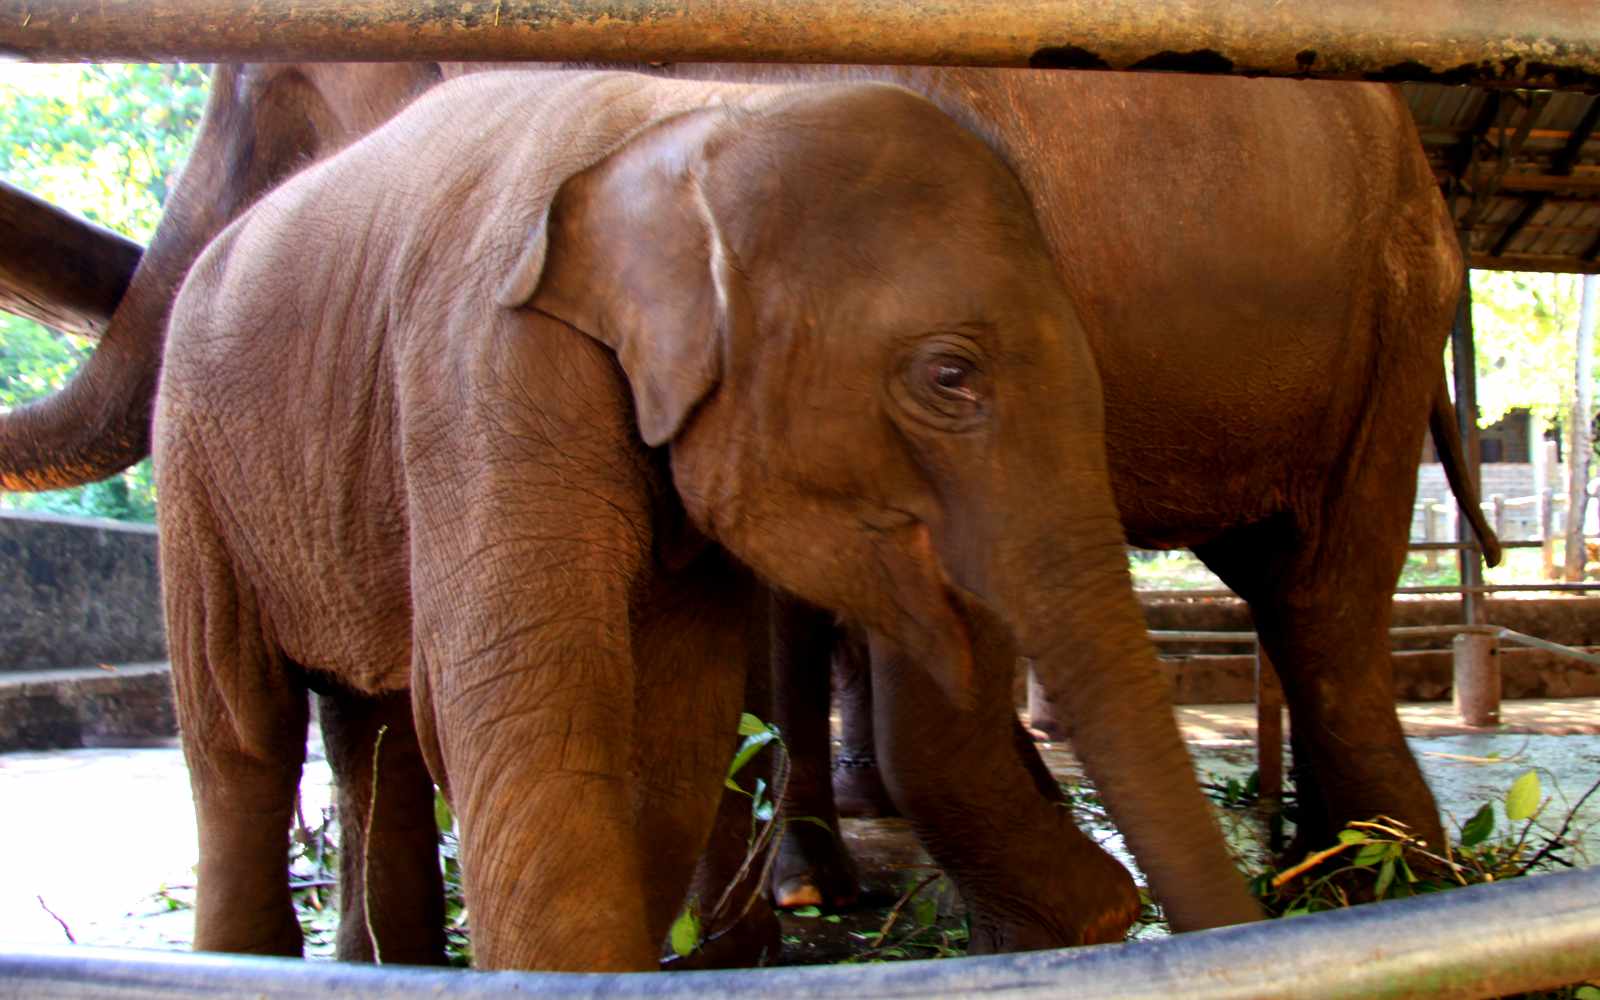 Małych słoni nie można karmić - banany są dla nich (jeszcze) szkodliwe